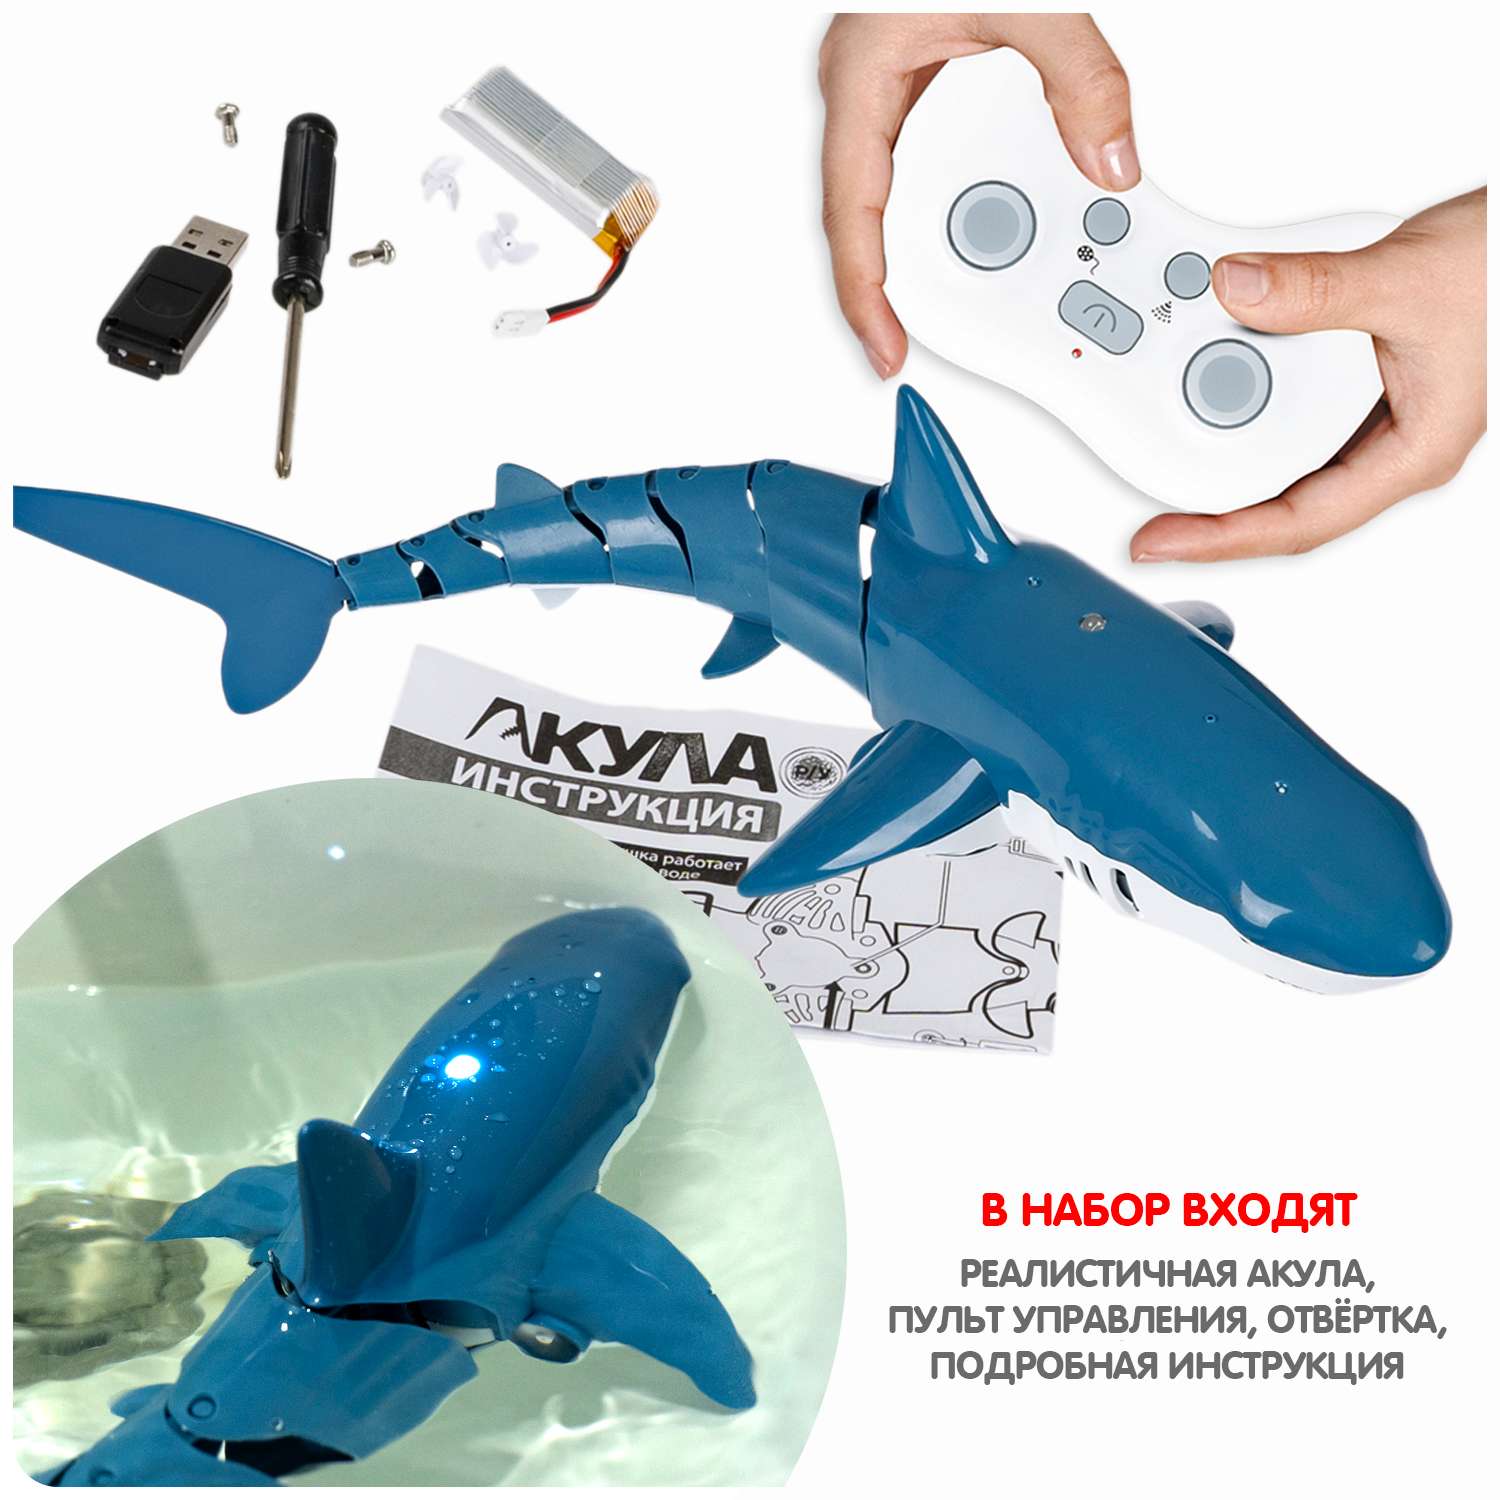 Игрушка радиоуправляемая BONDIBON Робот Акула детская водная игрушка - фото 10